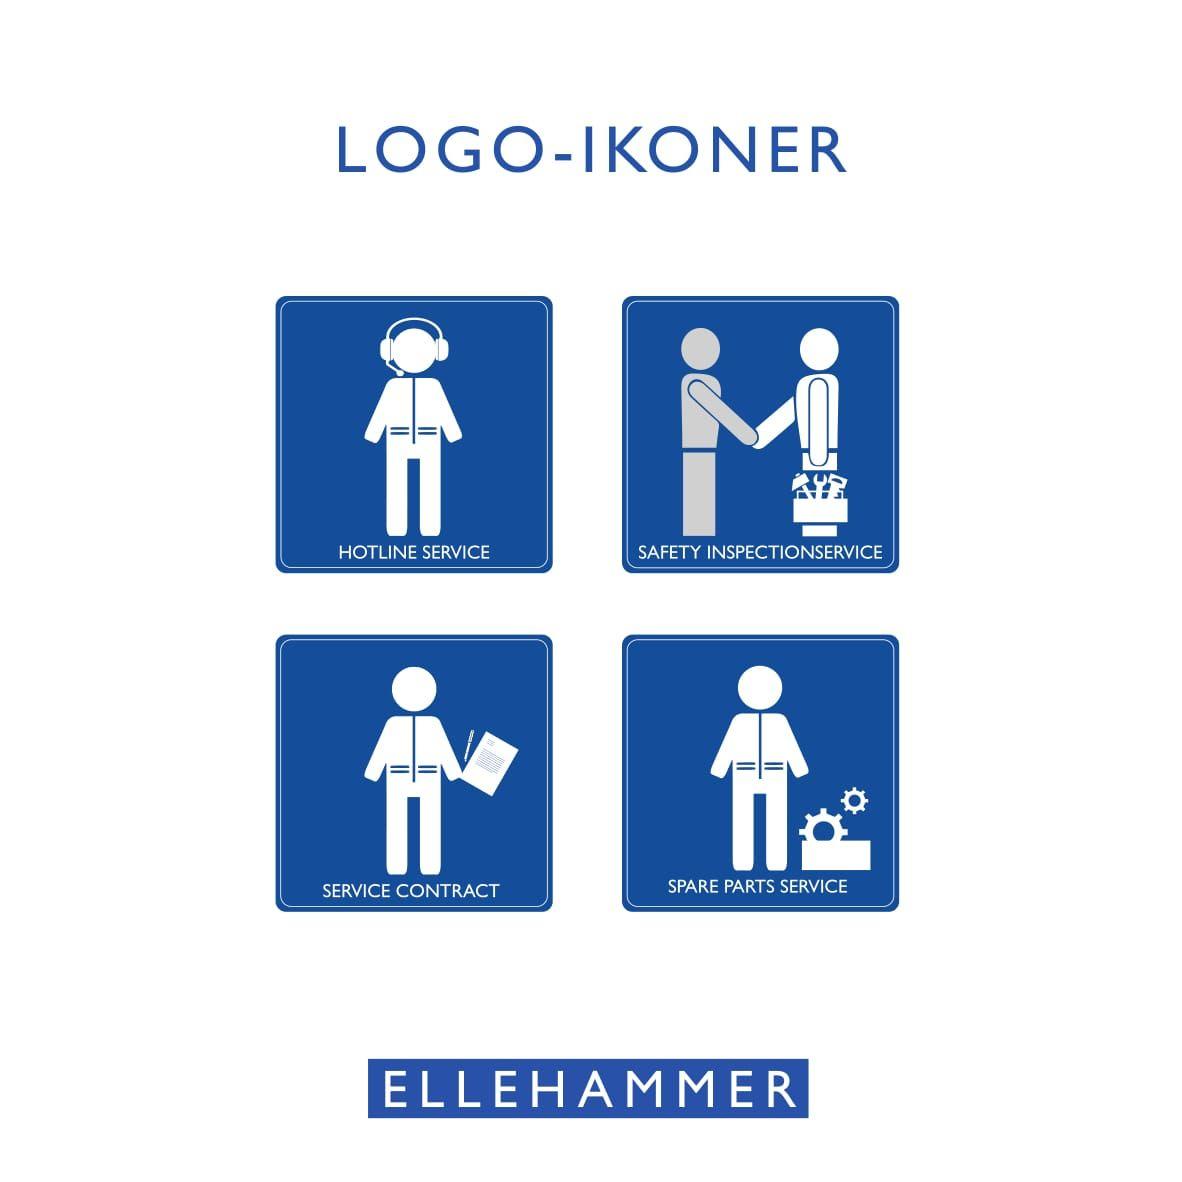 Ellehammer Logo - Ellehammer – modKANT